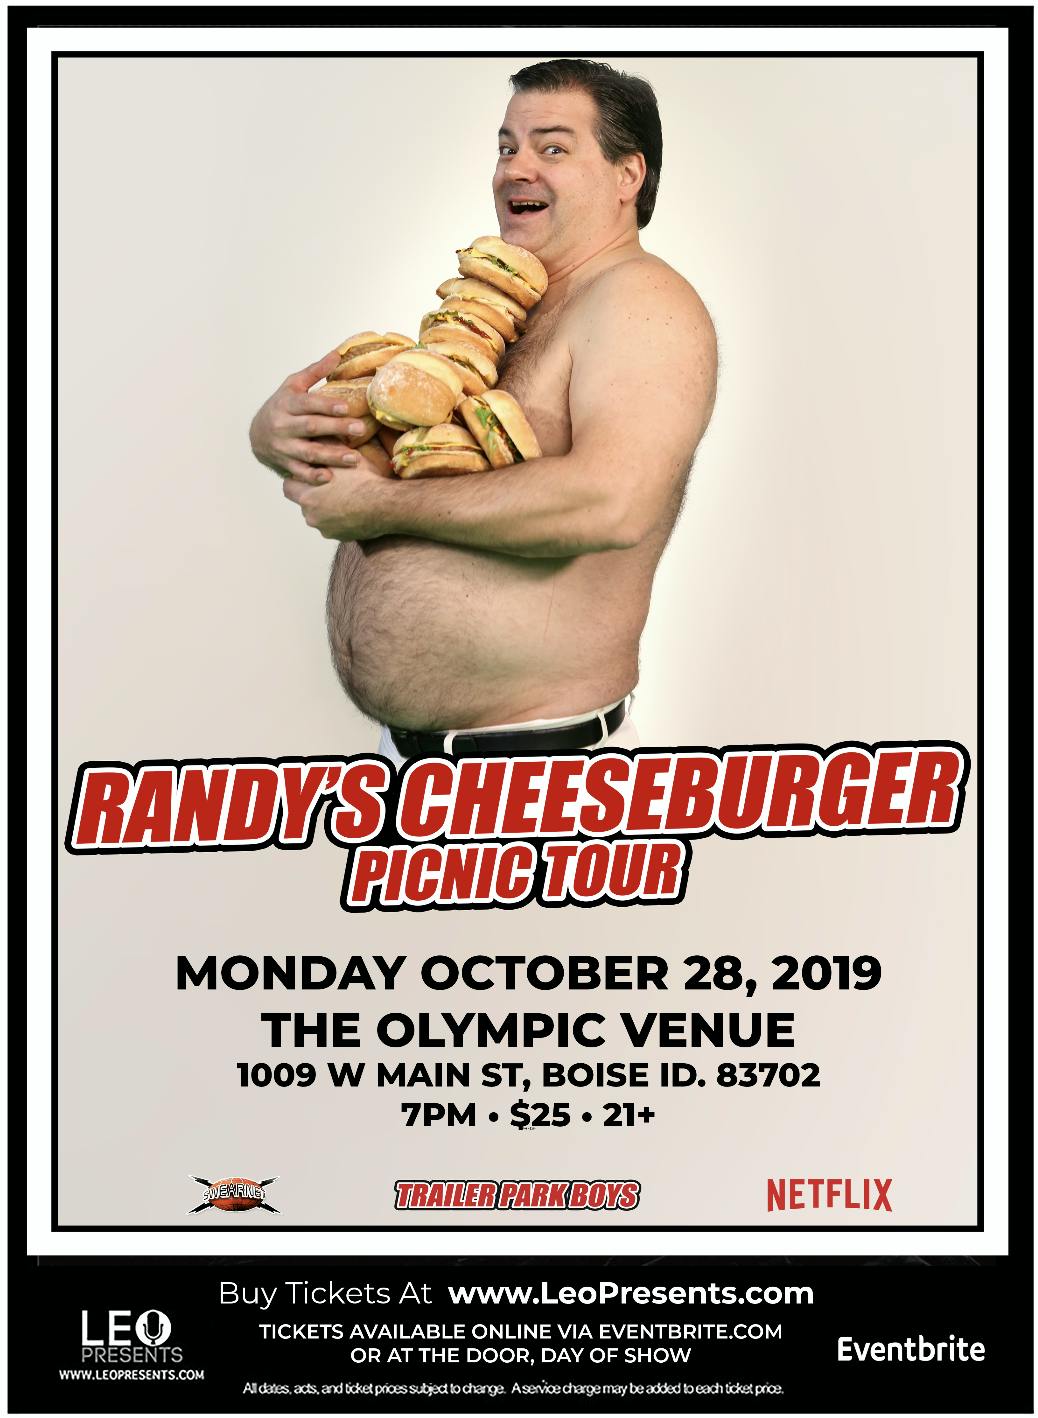 Randy's Cheeseburger Picnic